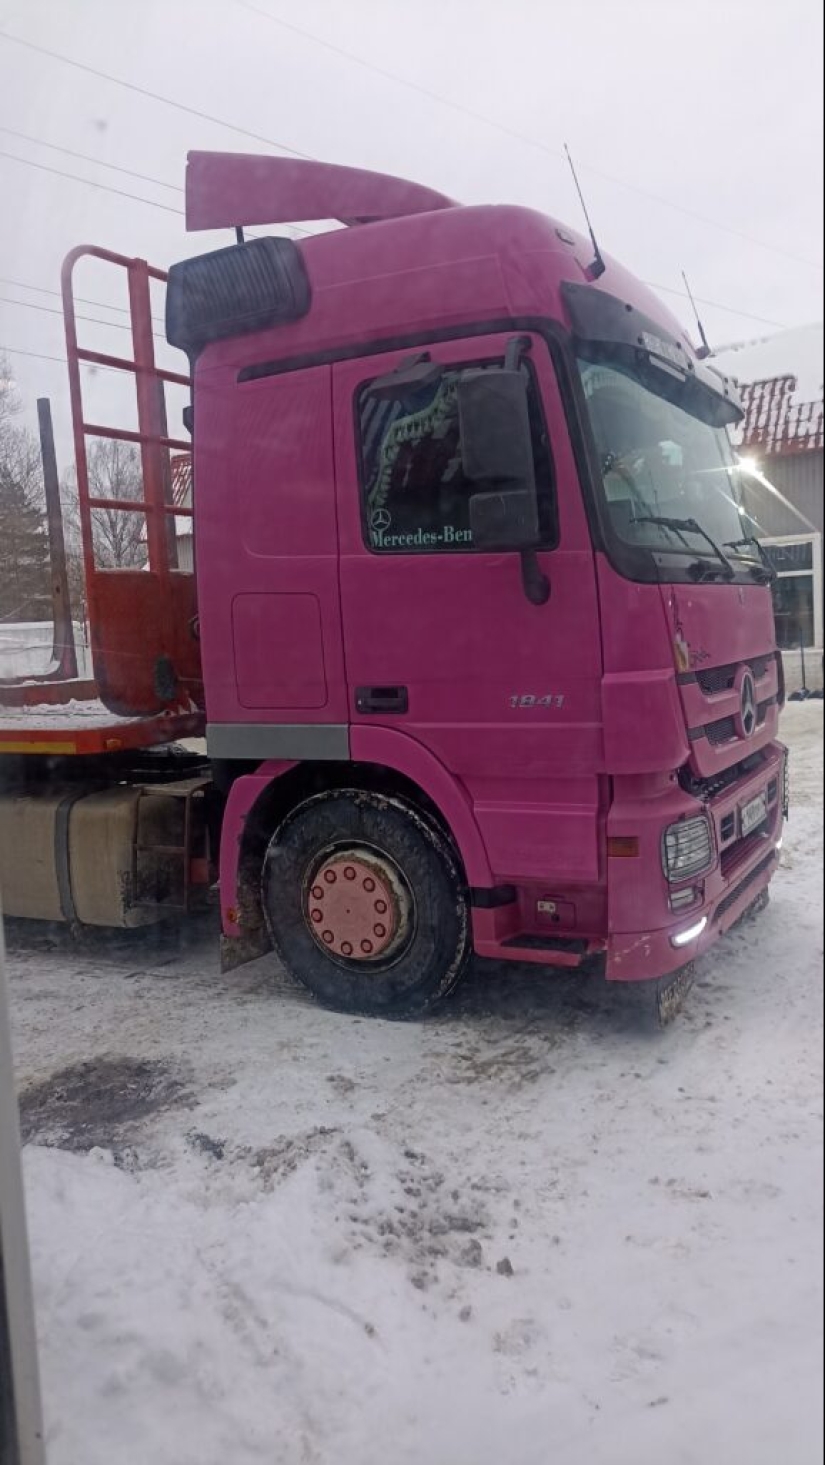 &quot;Barbie rumana&quot;: el camionero más inusual de Europa conduce un camión rosa